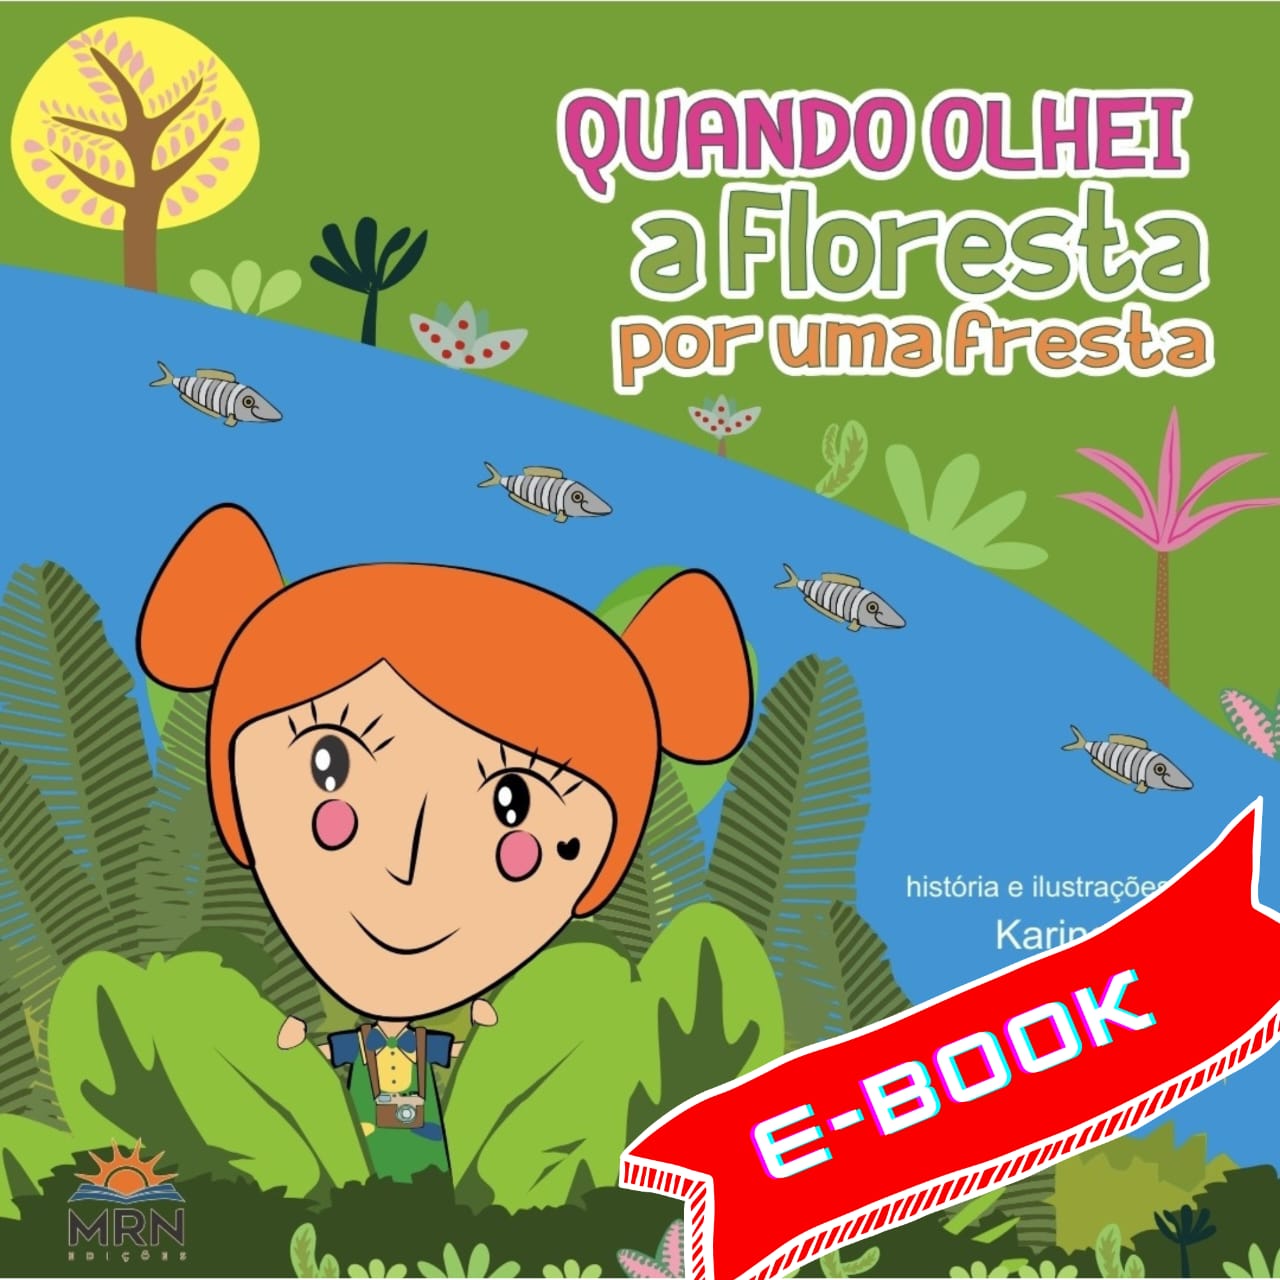 E-book: Quando olhei a floresta por uma fresta